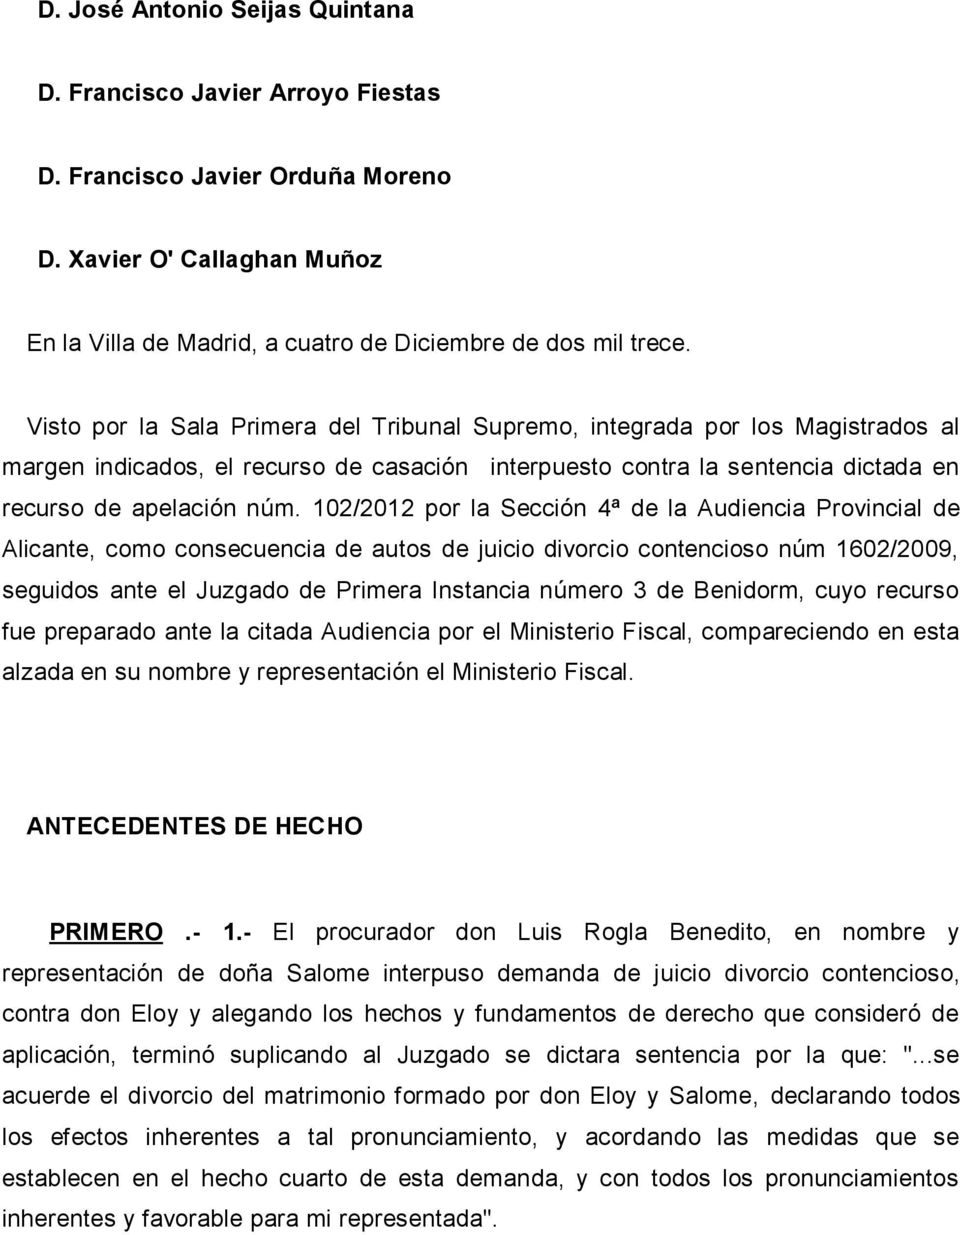 102/2012 por la Sección 4ª de la Audiencia Provincial de Alicante, como consecuencia de autos de juicio divorcio contencioso núm 1602/2009, seguidos ante el Juzgado de Primera Instancia número 3 de